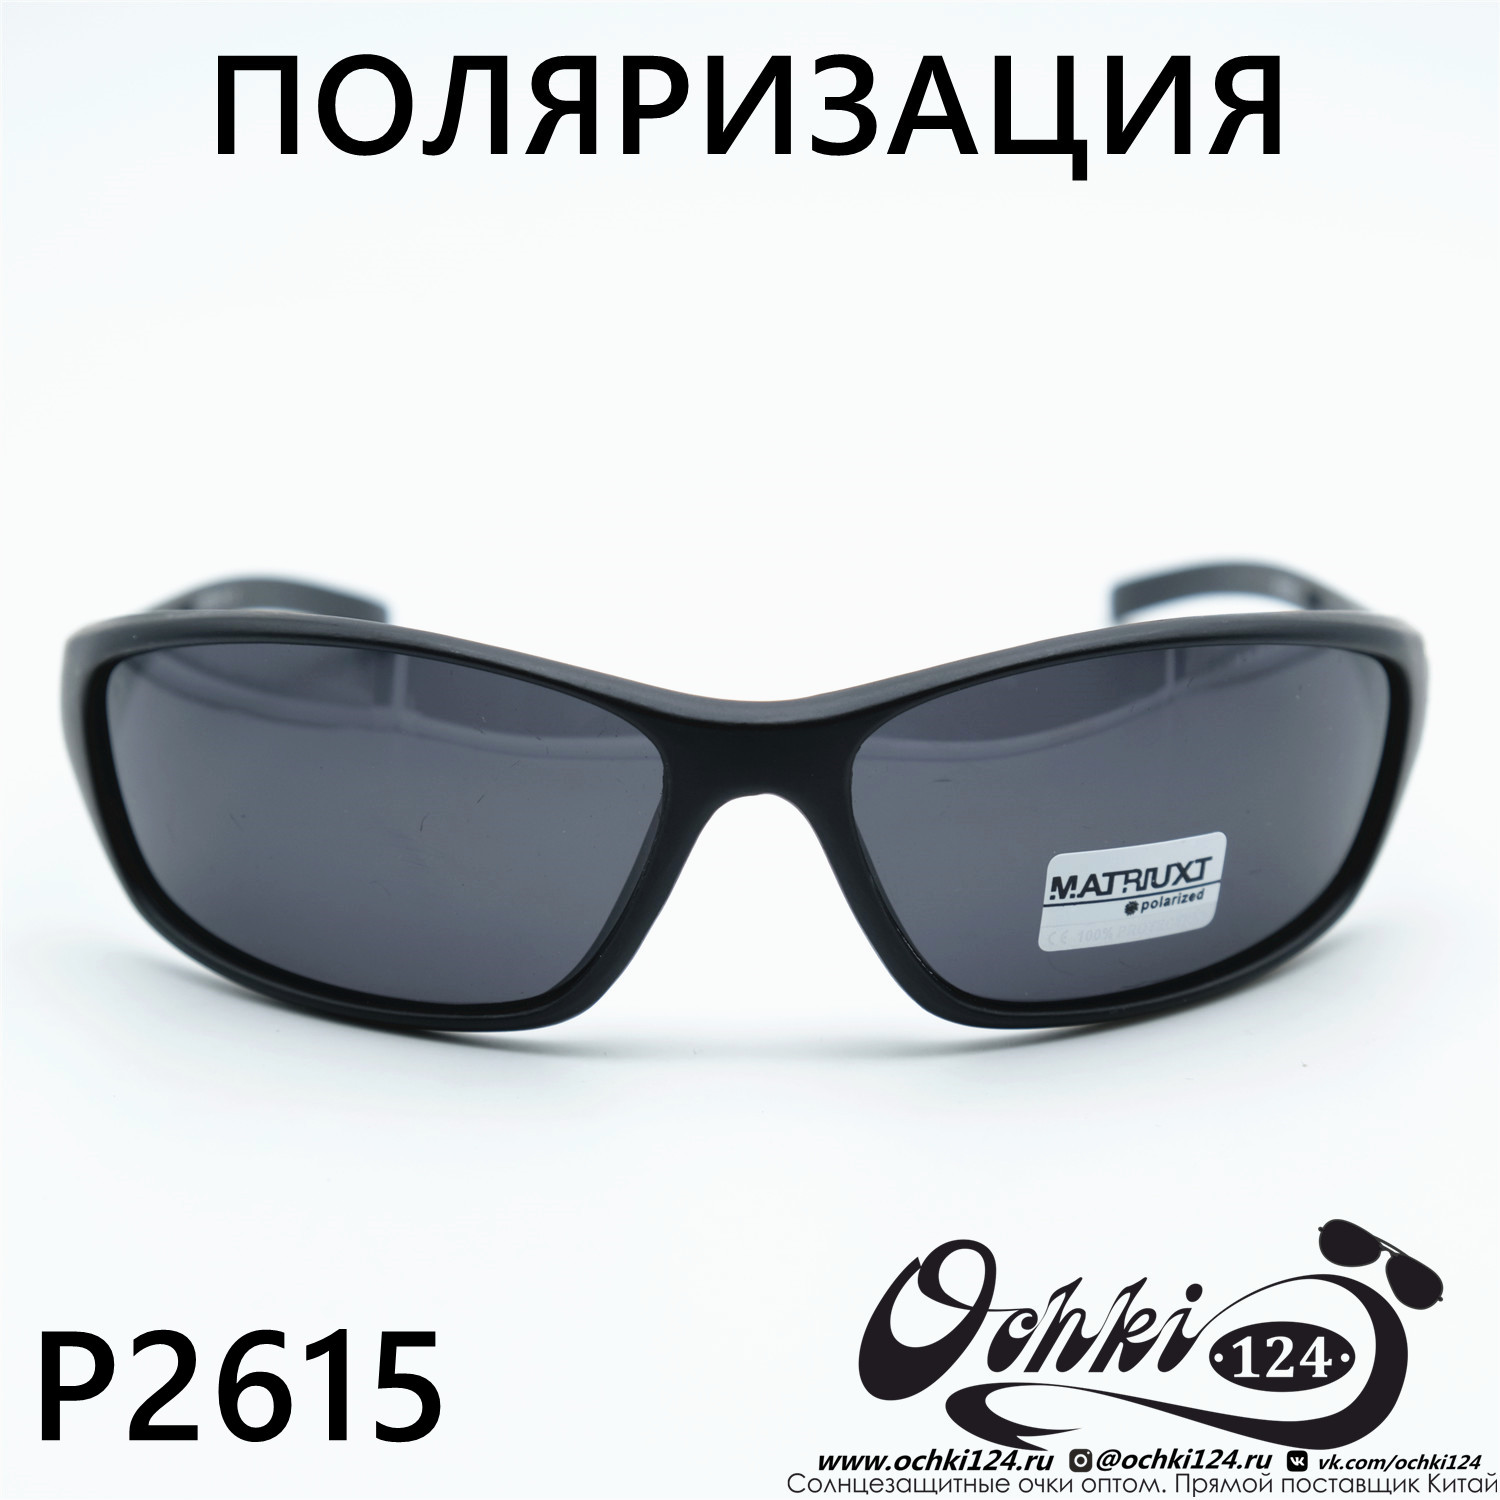  Солнцезащитные очки картинка Мужские MATRIUXT  Прямоугольные P2615-C2 